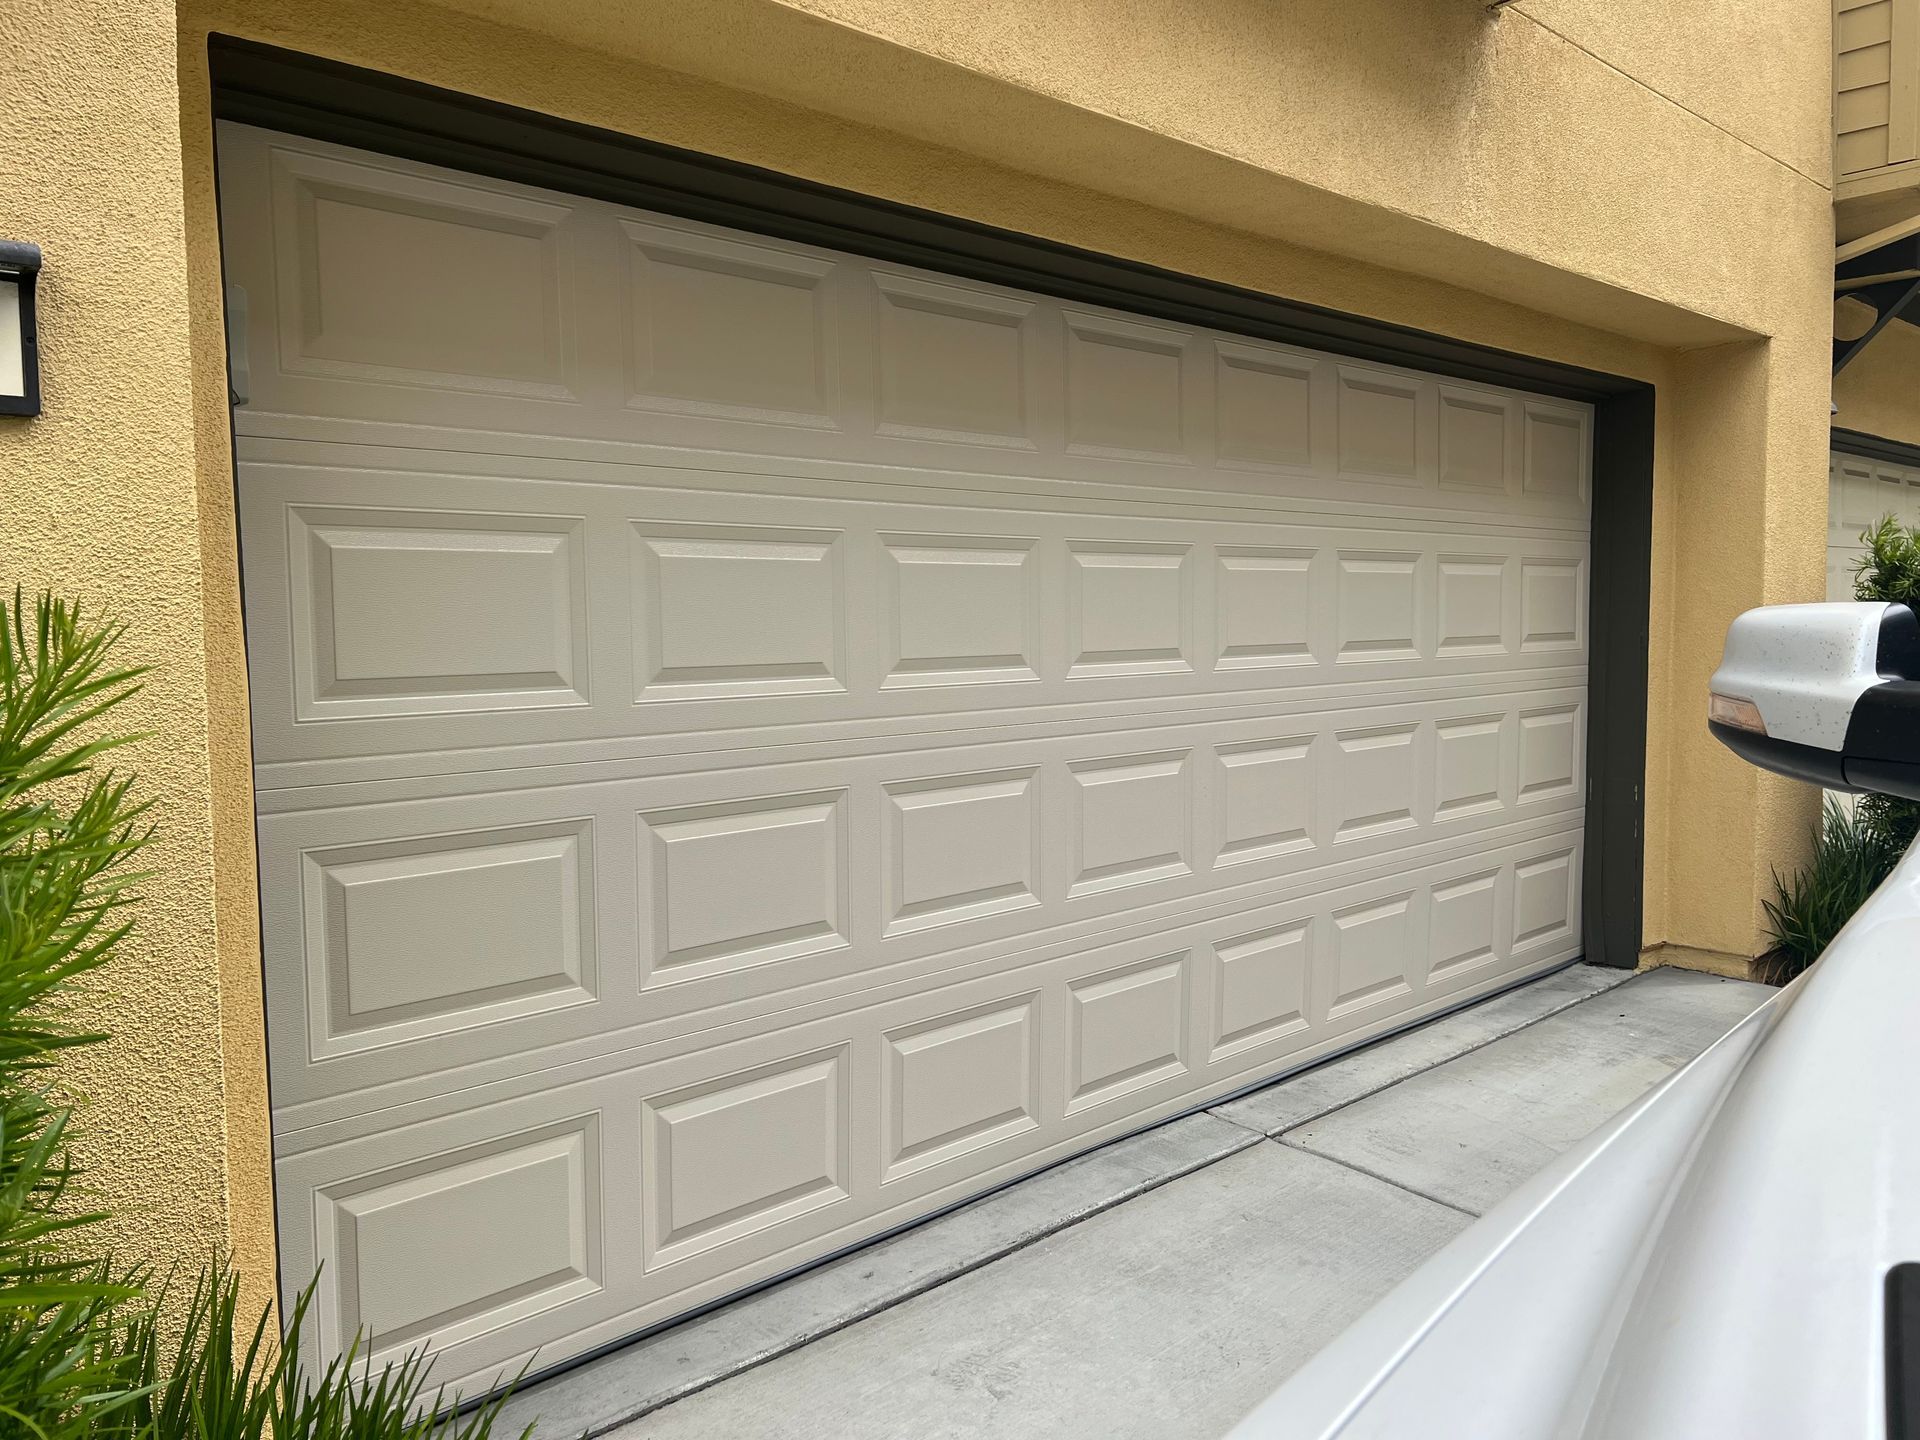 Closed, fixed garage door